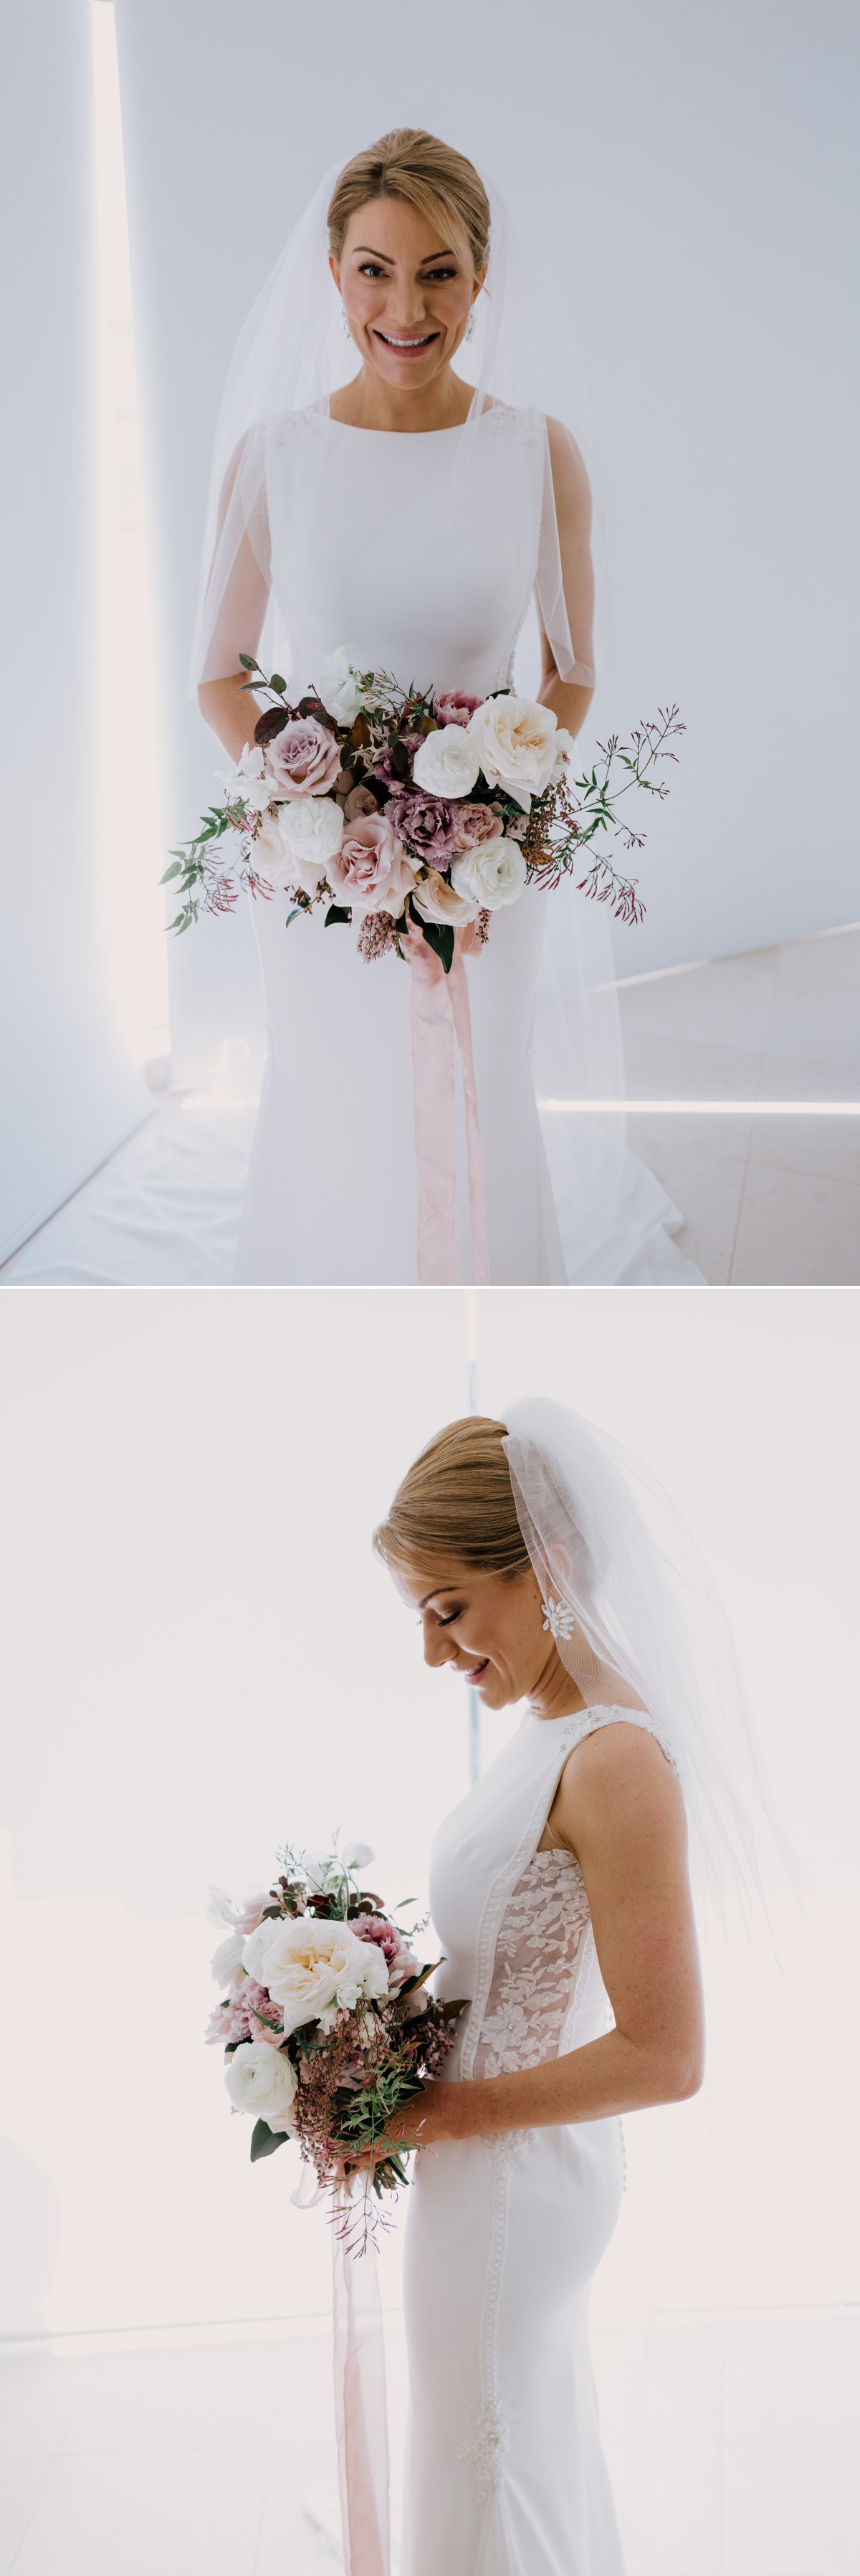 bride wedding portraits